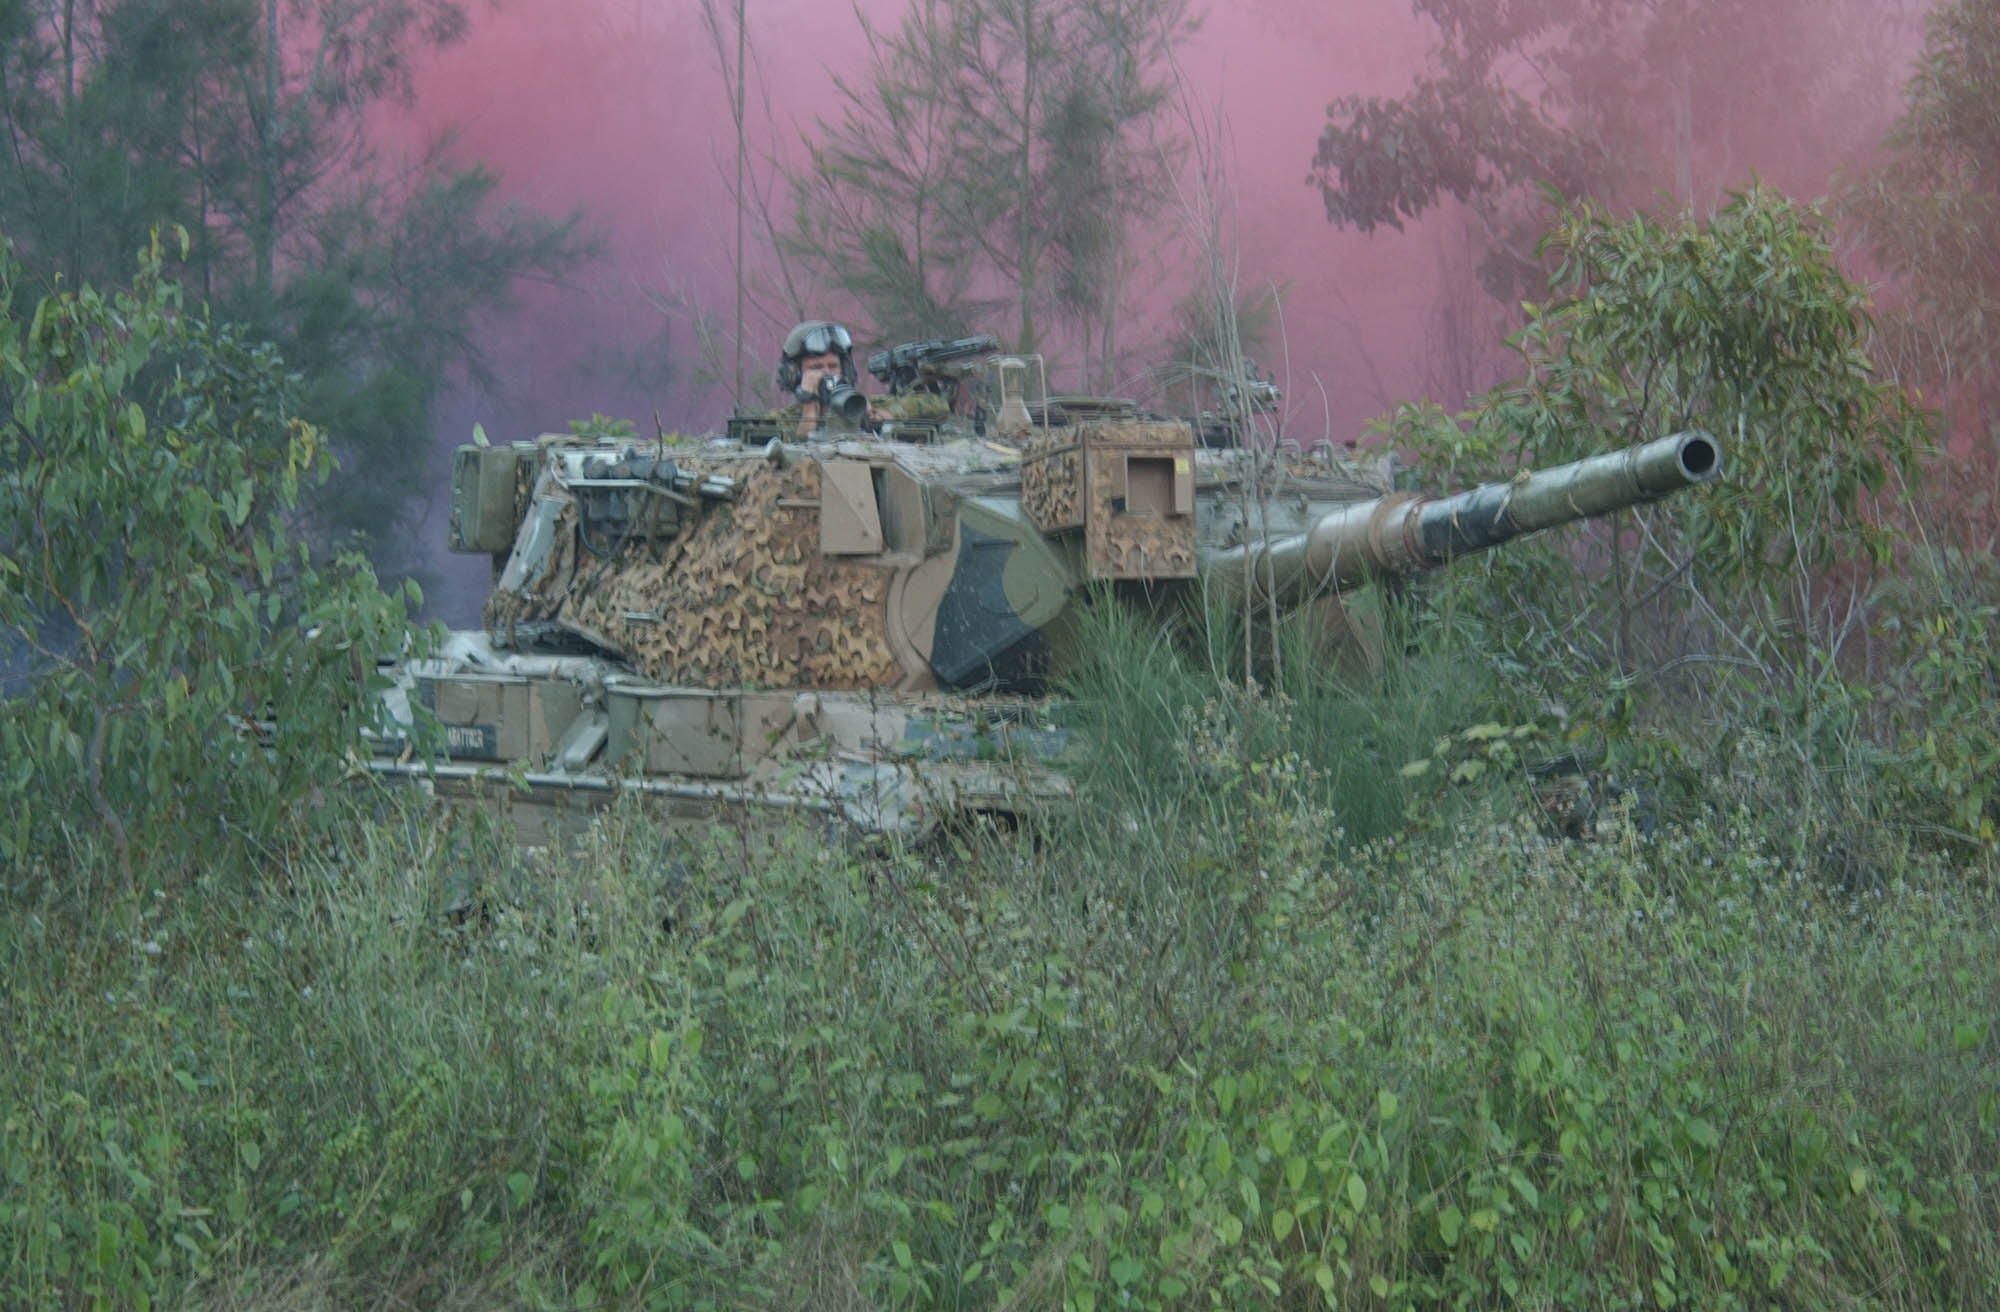 Australian_Leopard_AS1_tank_forest_smoke.jpg